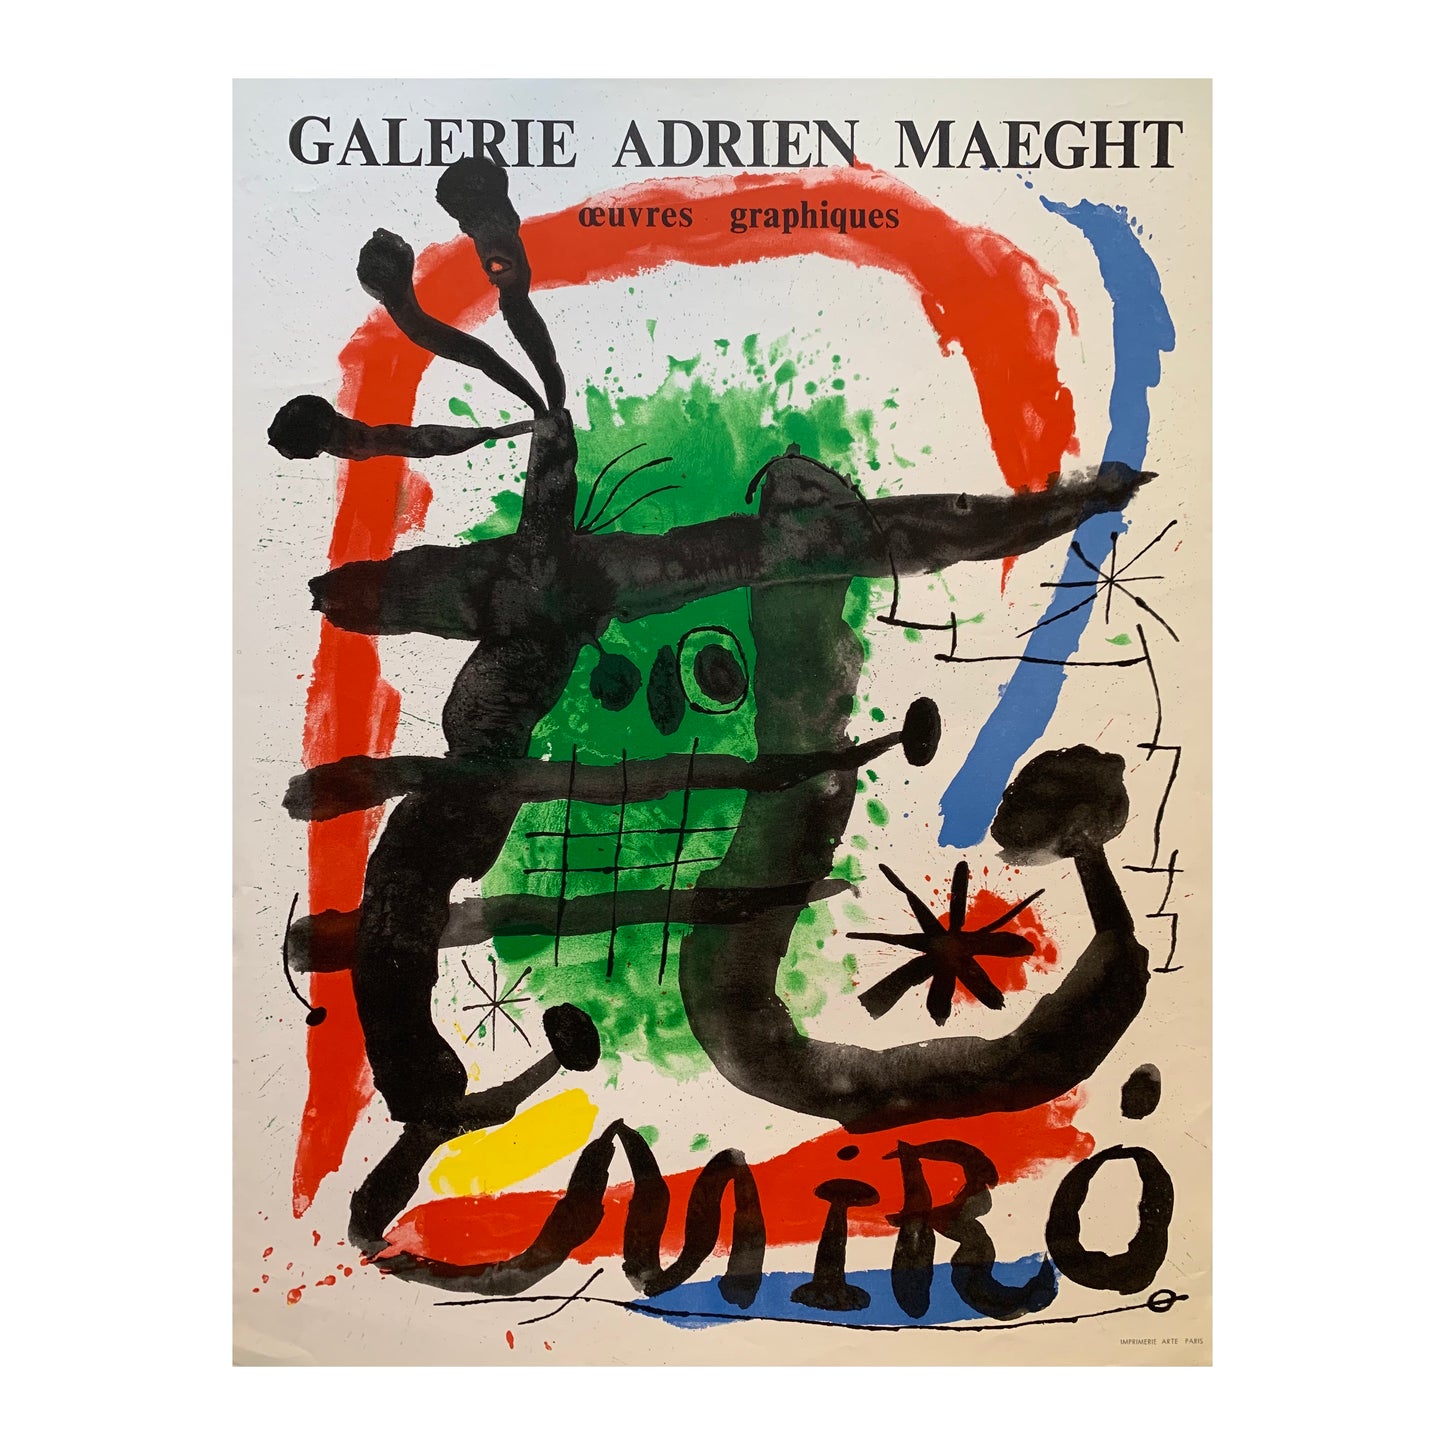 Joan Miró. “Miró - œuvres graphiques”, ca 1965